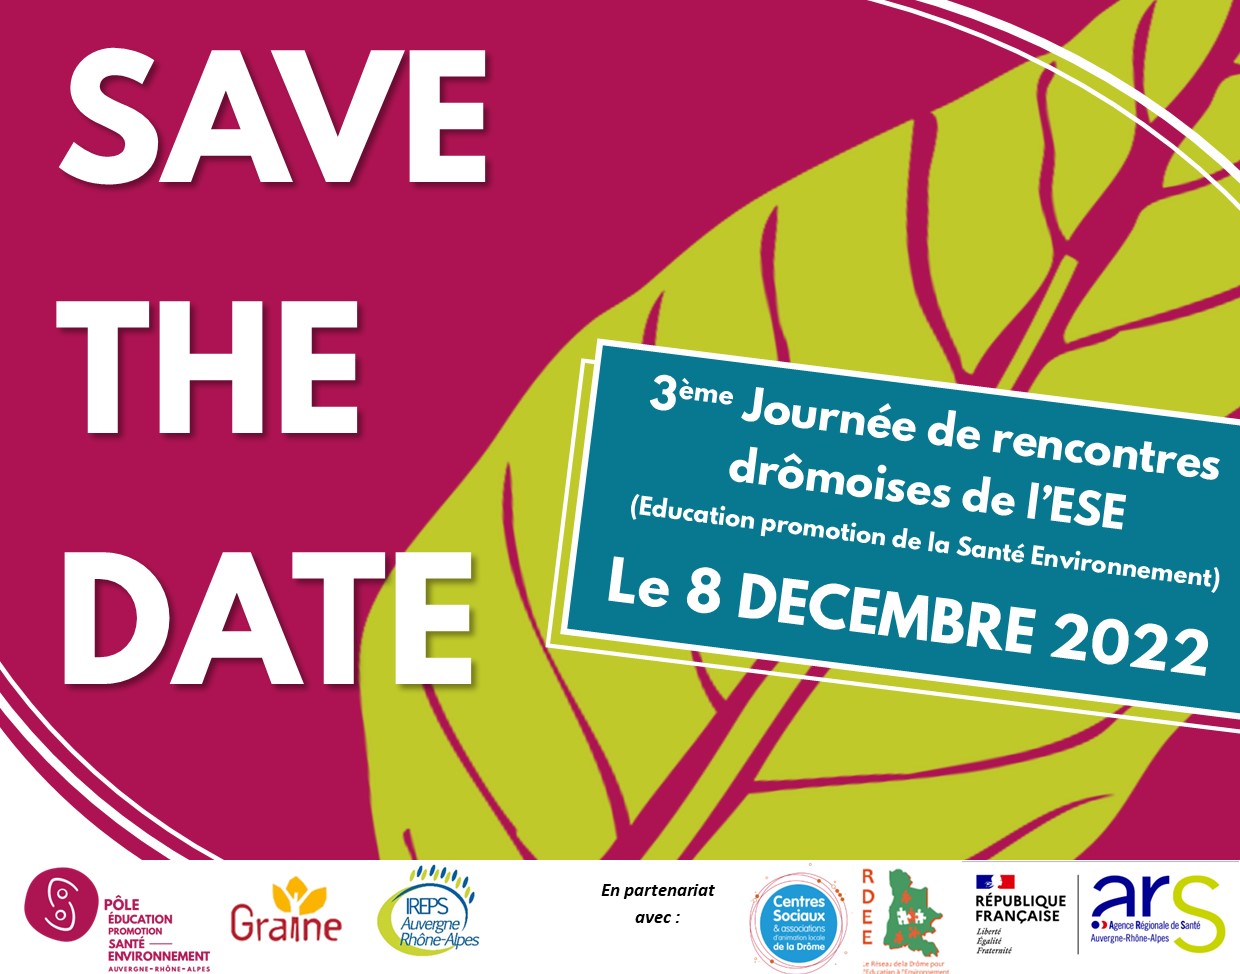 La journée aura lieu le 8 décembre 2022 en Drôme (lieu à définir)